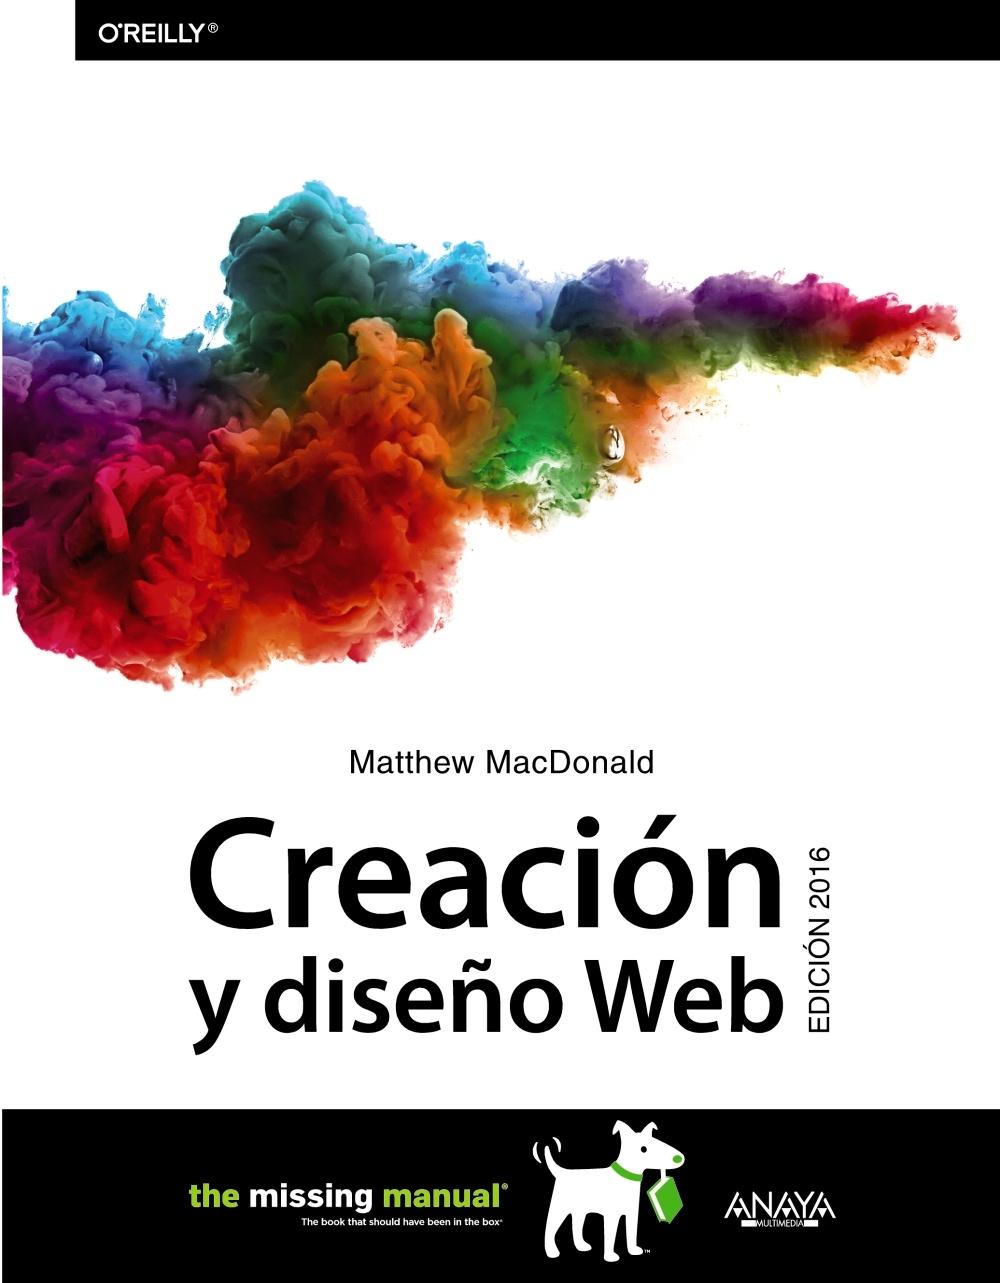 CREACION Y DISEÑO WEB. 2016